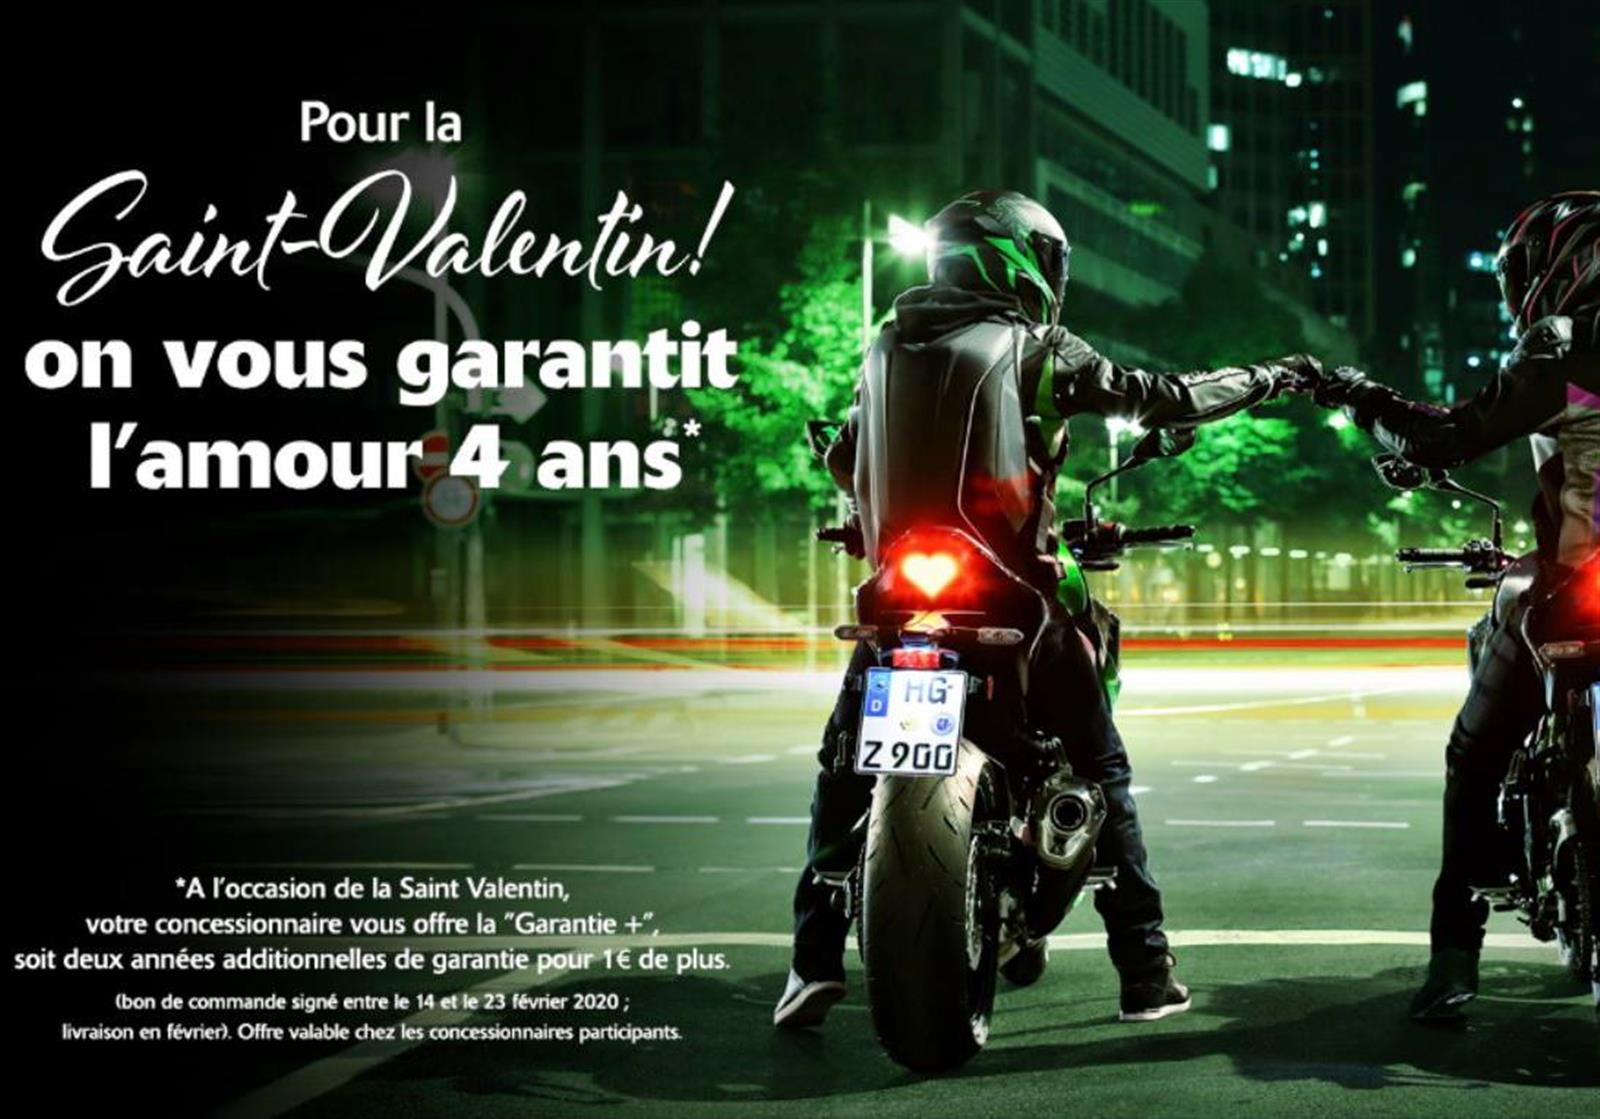 Kawasaki Vous Offre 4 Ans D Amour Pour La Saint Valentin